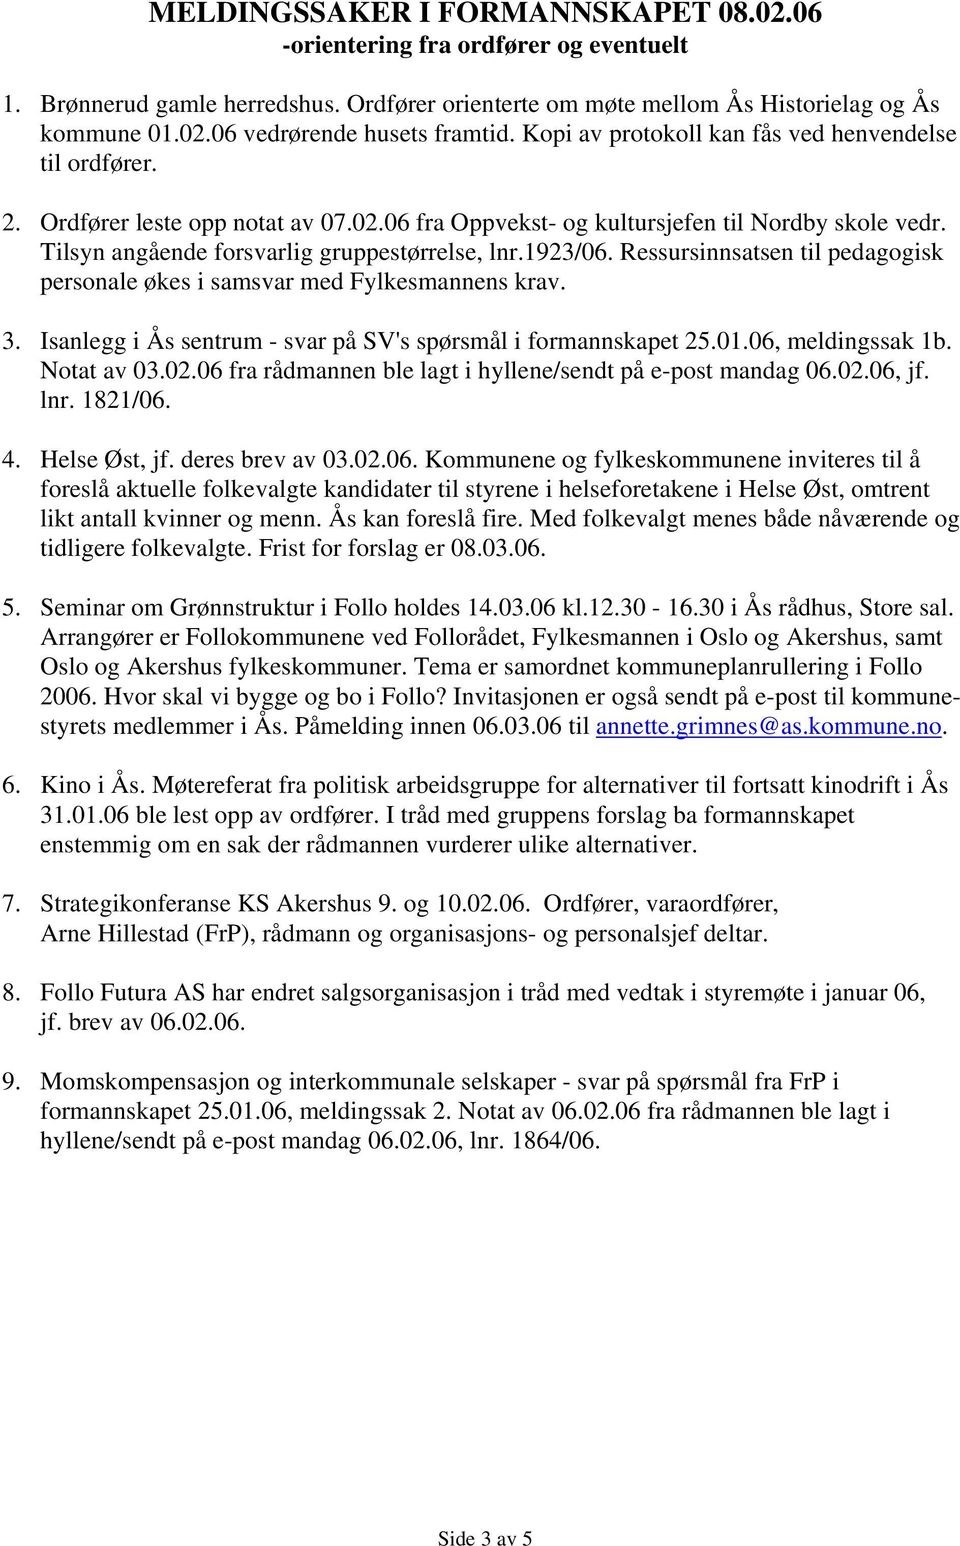 1923/06. Ressursinnsatsen til pedagogisk personale økes i samsvar med Fylkesmannens krav. 3. Isanlegg i Ås sentrum - svar på SV's spørsmål i formannskapet 25.01.06, meldingssak 1b. Notat av 03.02.